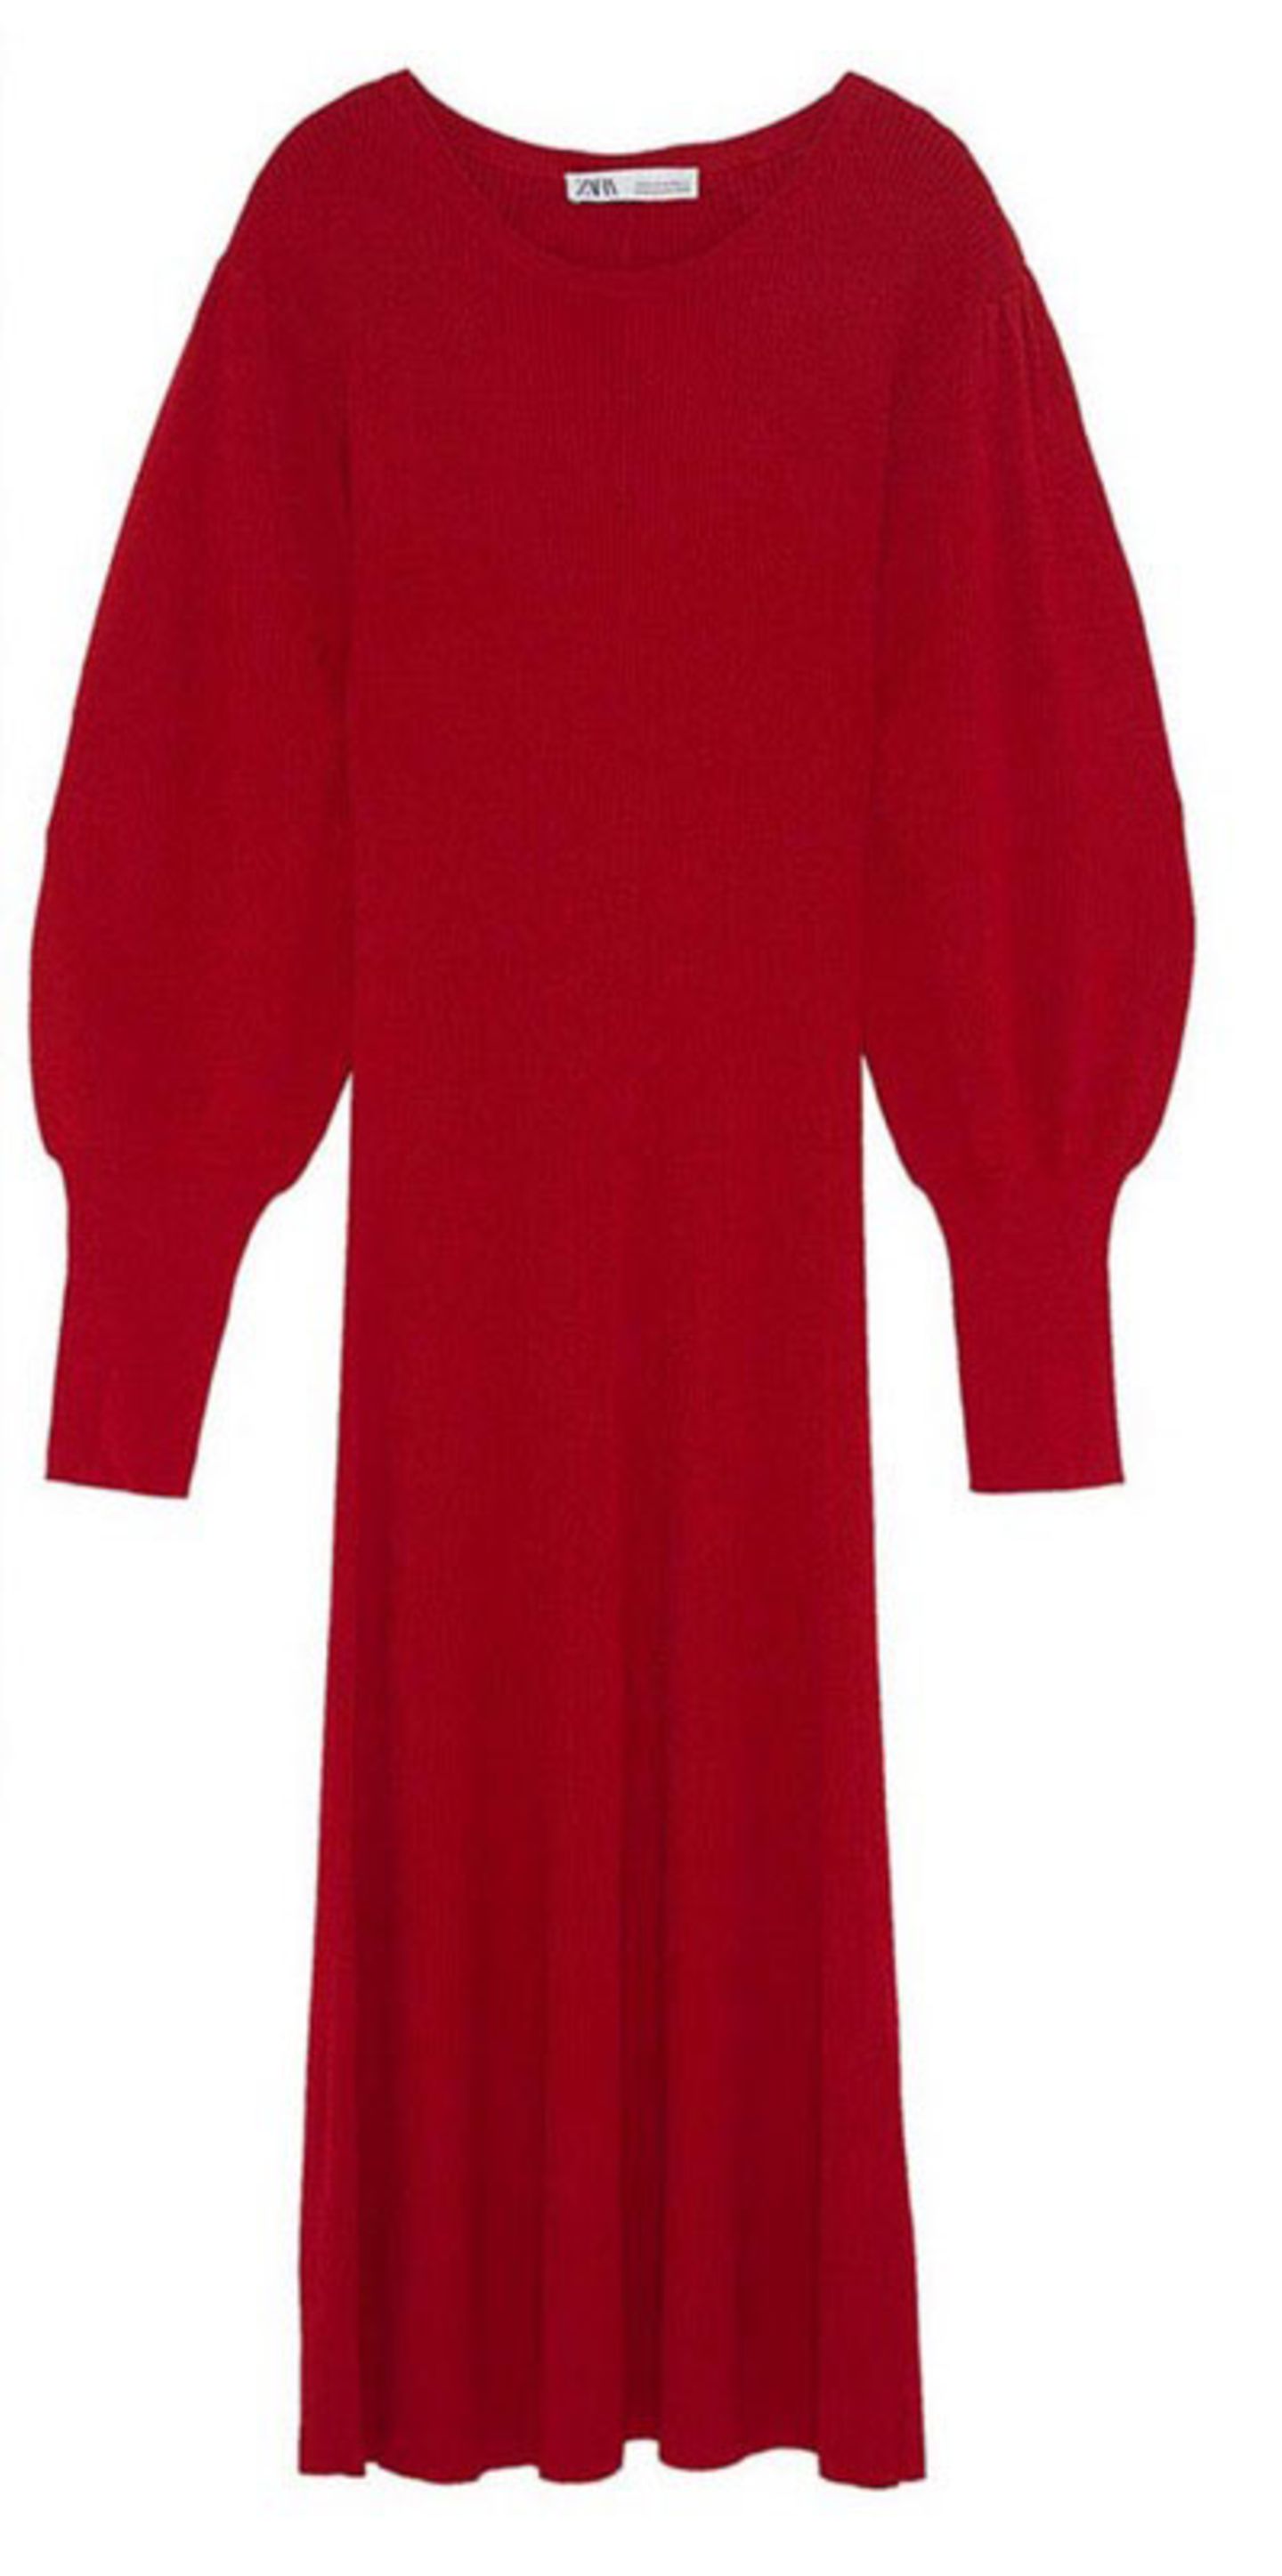 Royals, die günstige Kleidung tragen: rotes Kleid von Zara